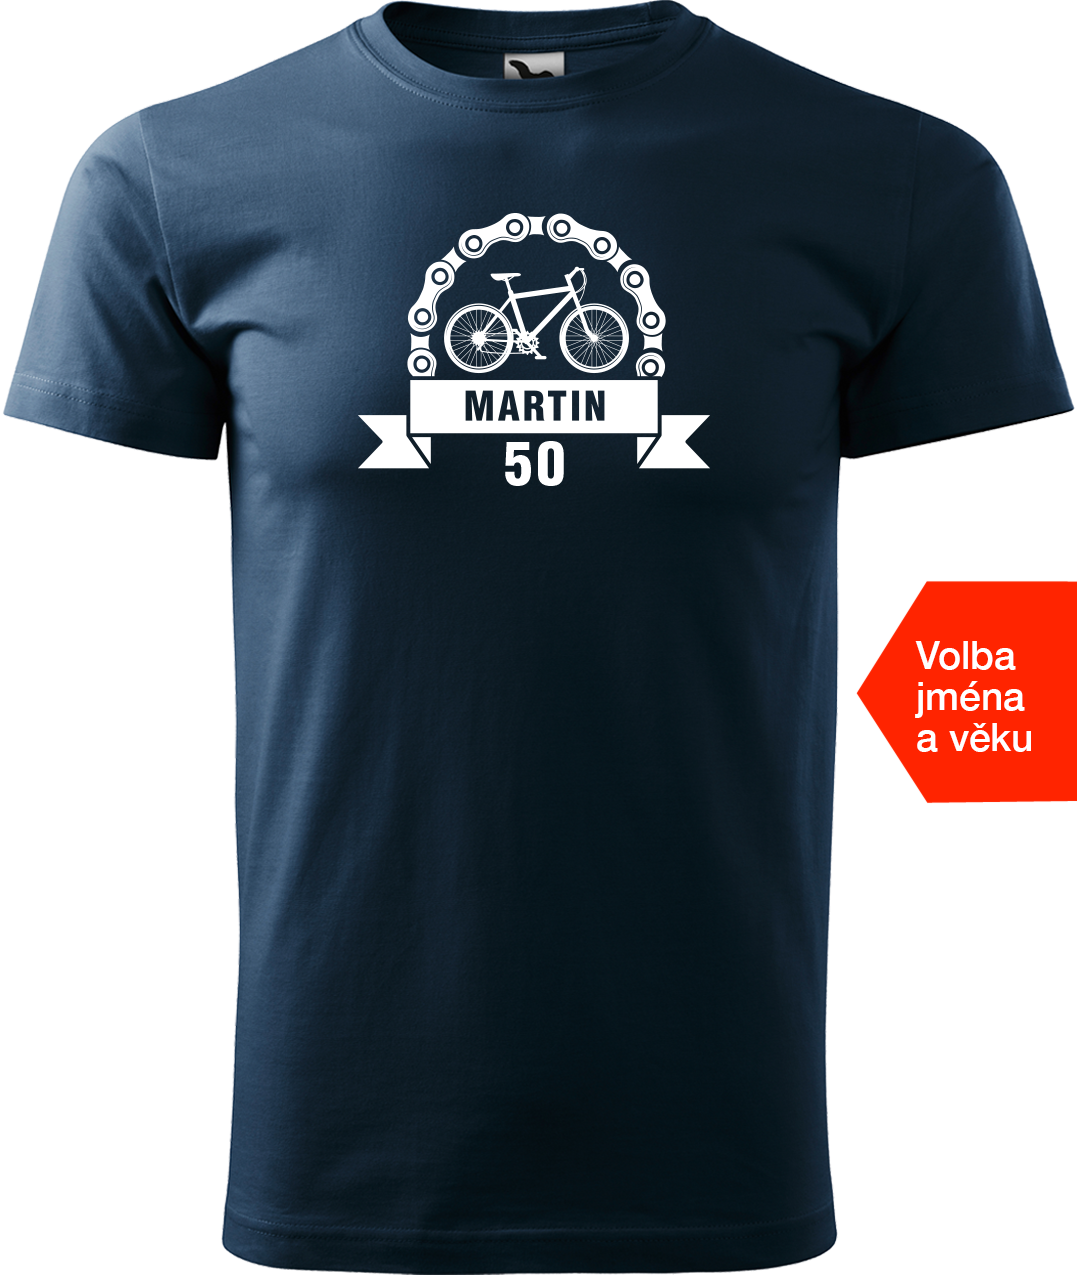 Pánské tričko pro cyklistu se jménem a věkem - Blahopřání Velikost: 4XL, Barva: Námořní modrá (02)